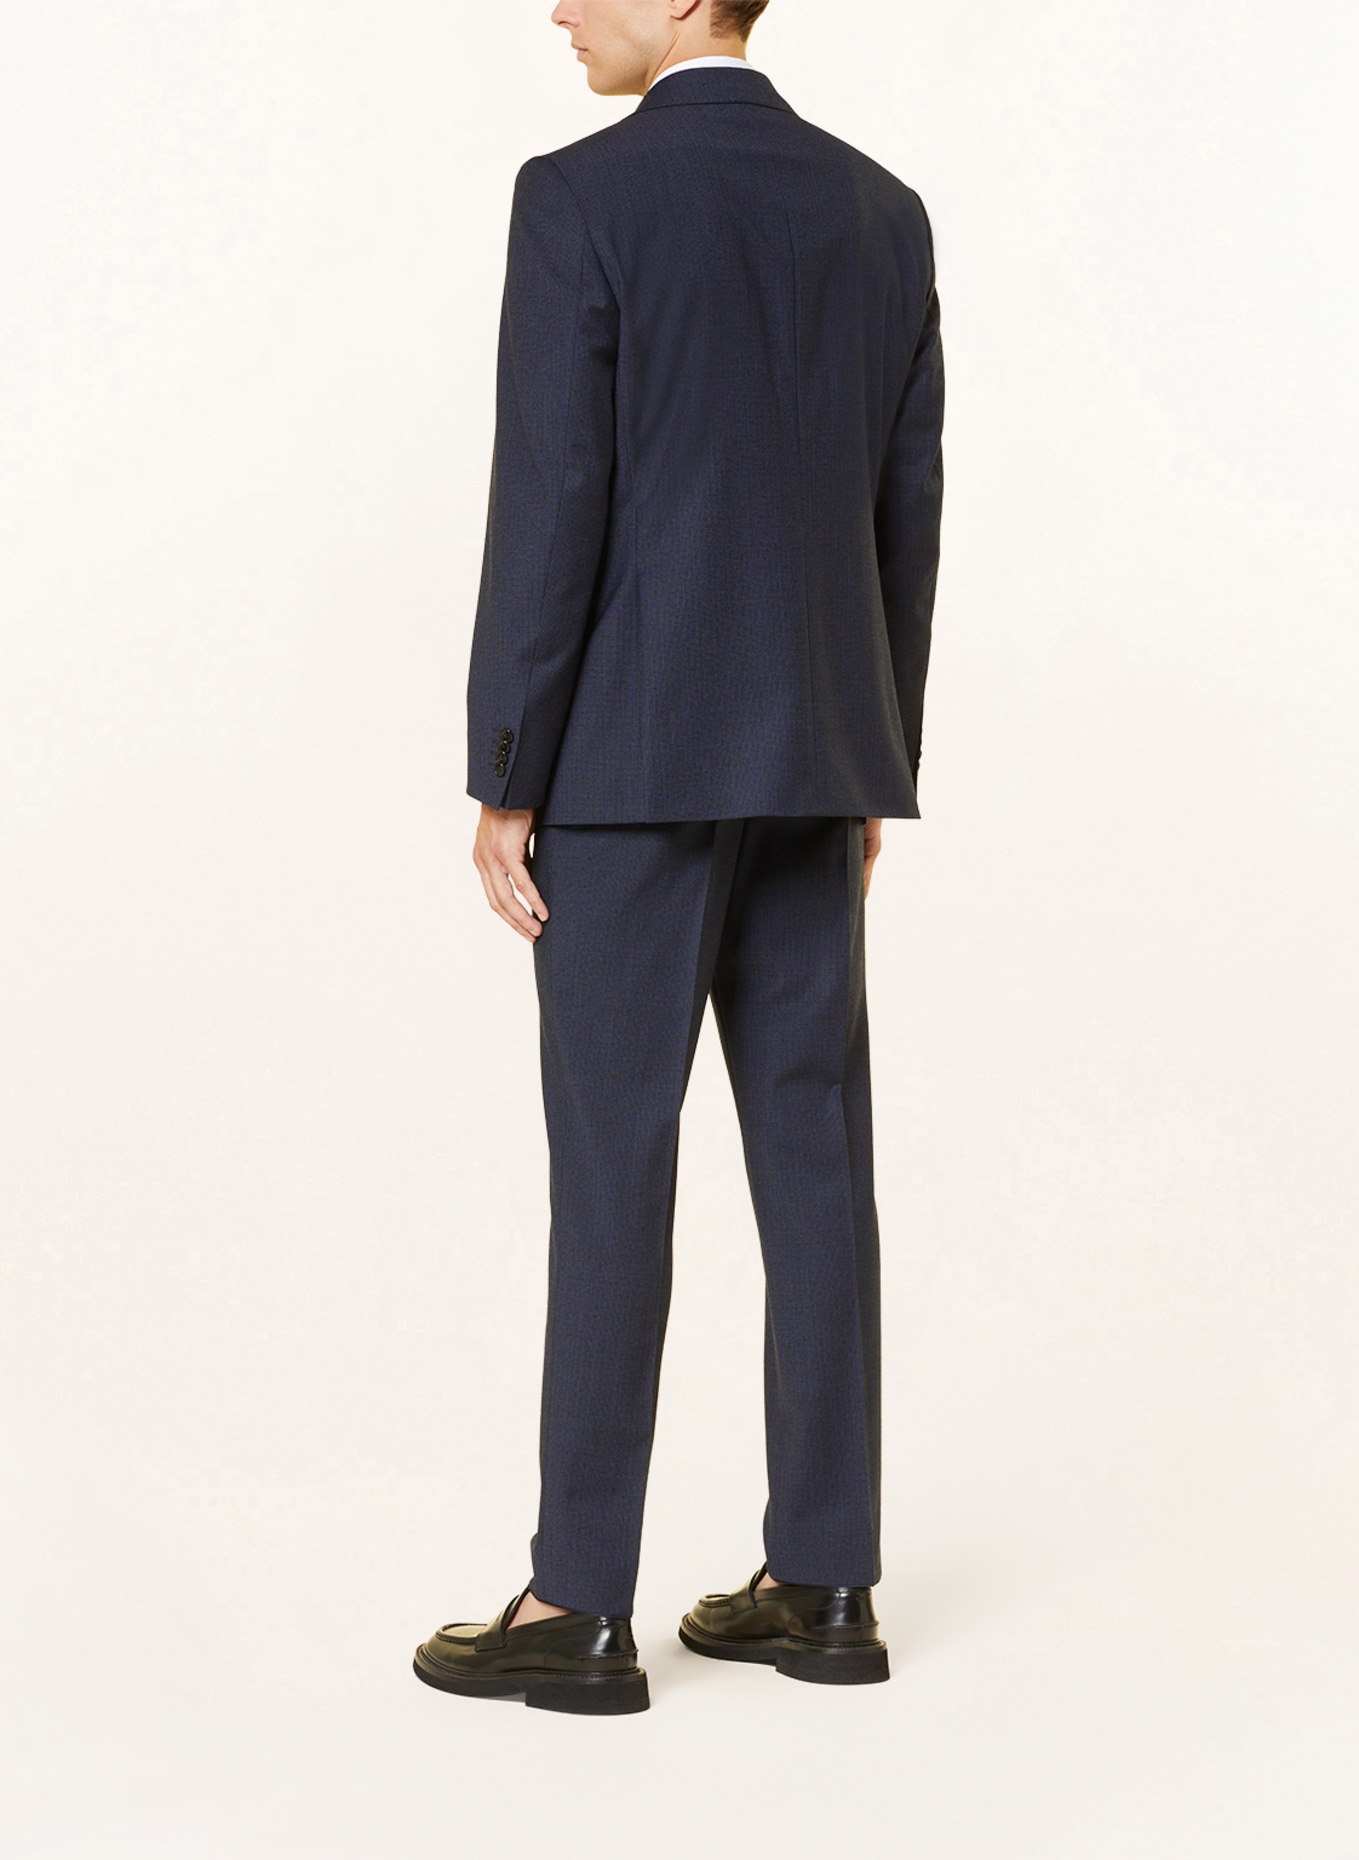 EDUARD DRESSLER Suit jacket comfort fit, Color: 047 DUNKELBLAU (Image 3)